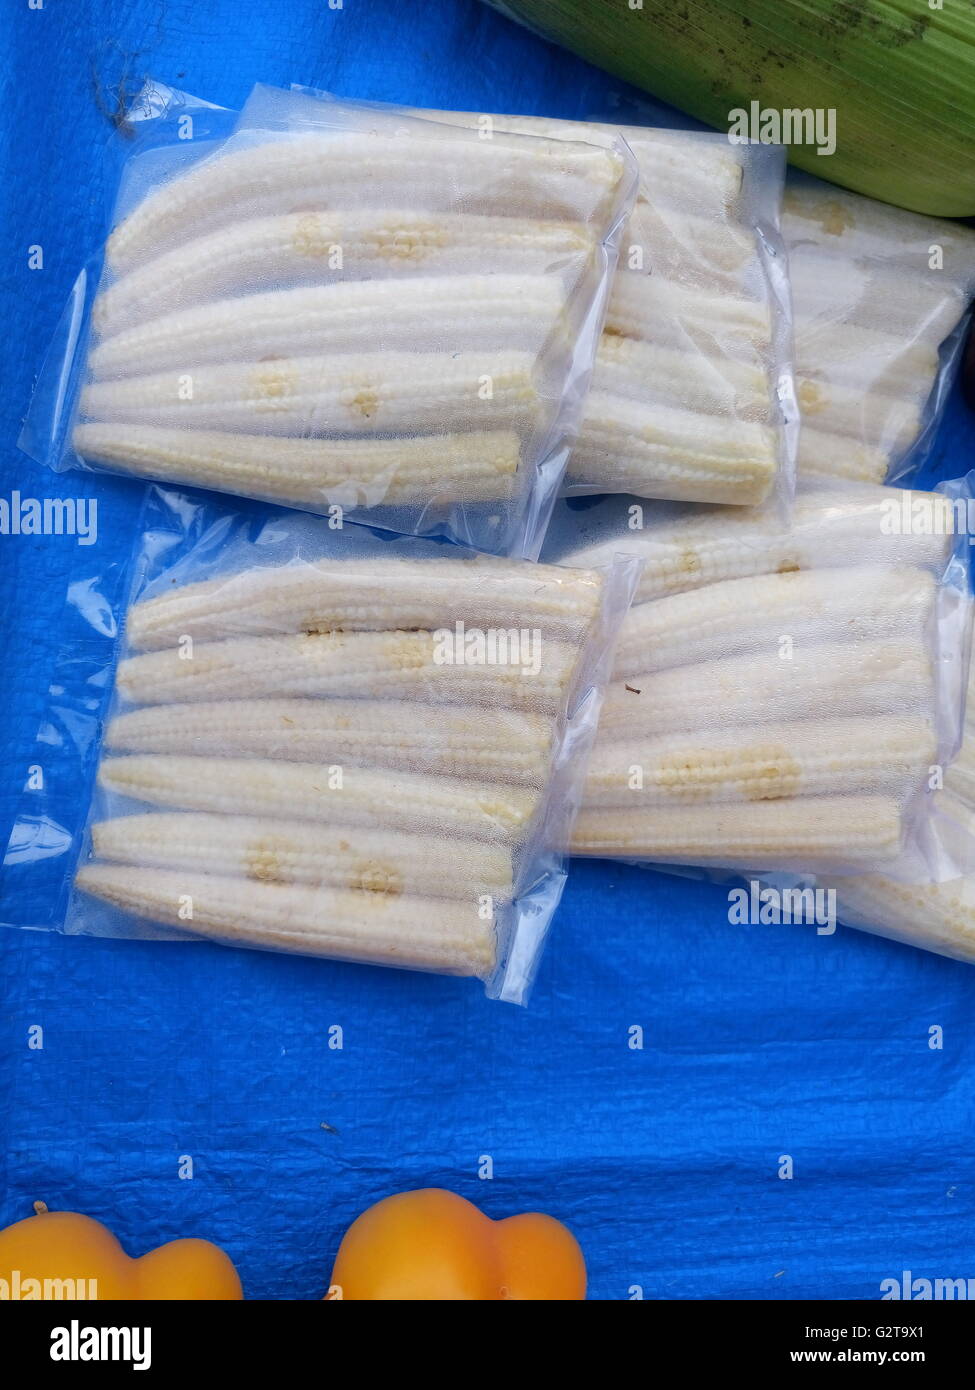 Full frame shot of baby corns for sale Stock Photo